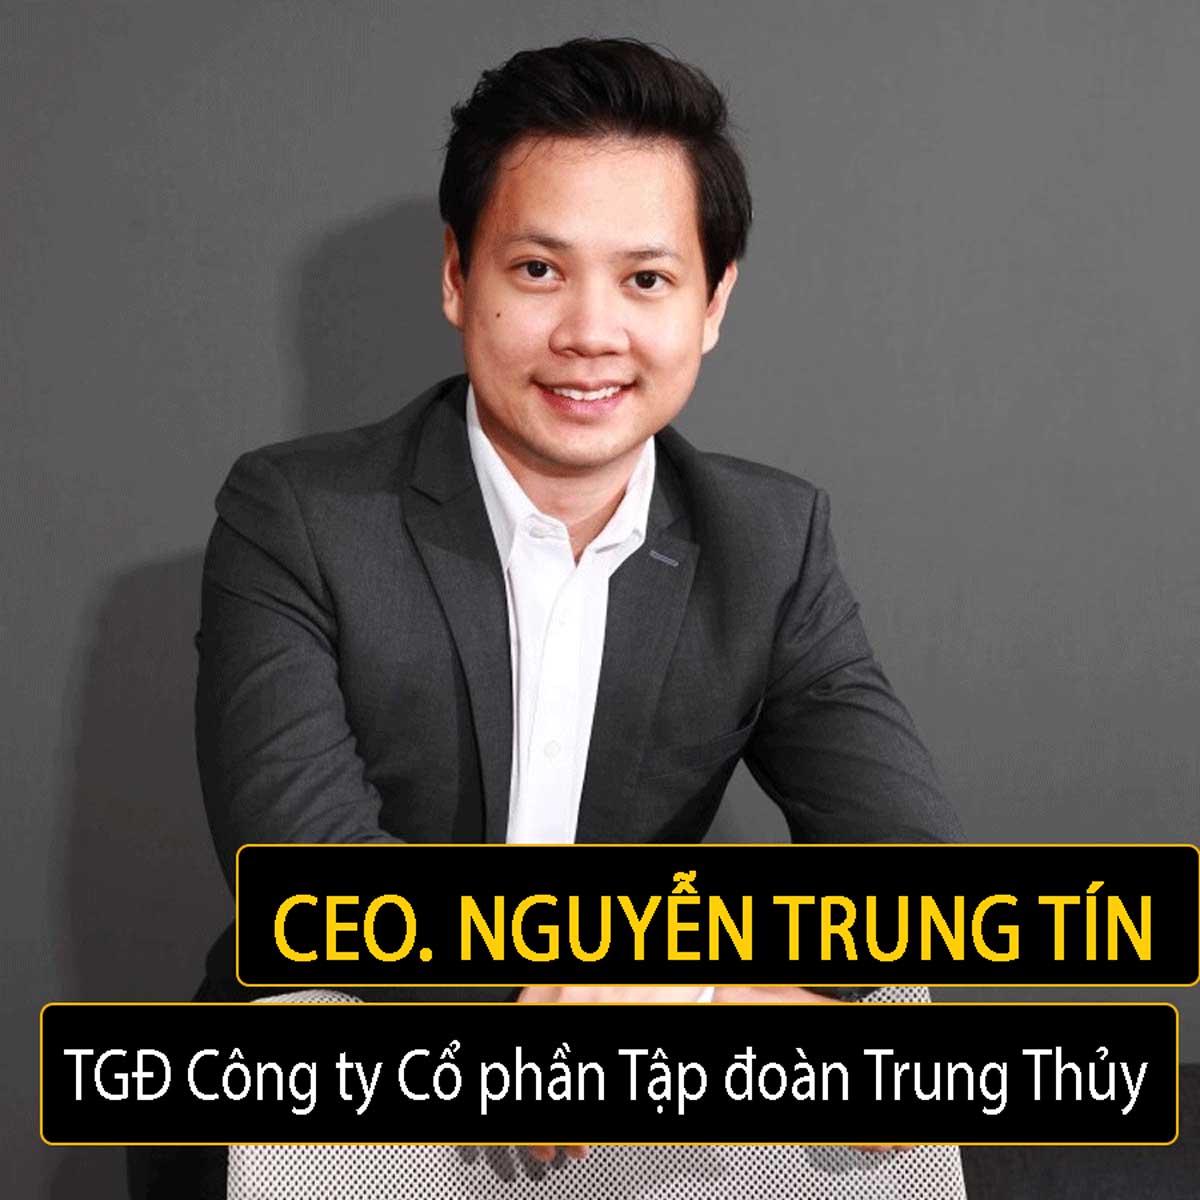 Ông Nguyễn Trung Tín là CEO đương nhiệm của tập đoàn